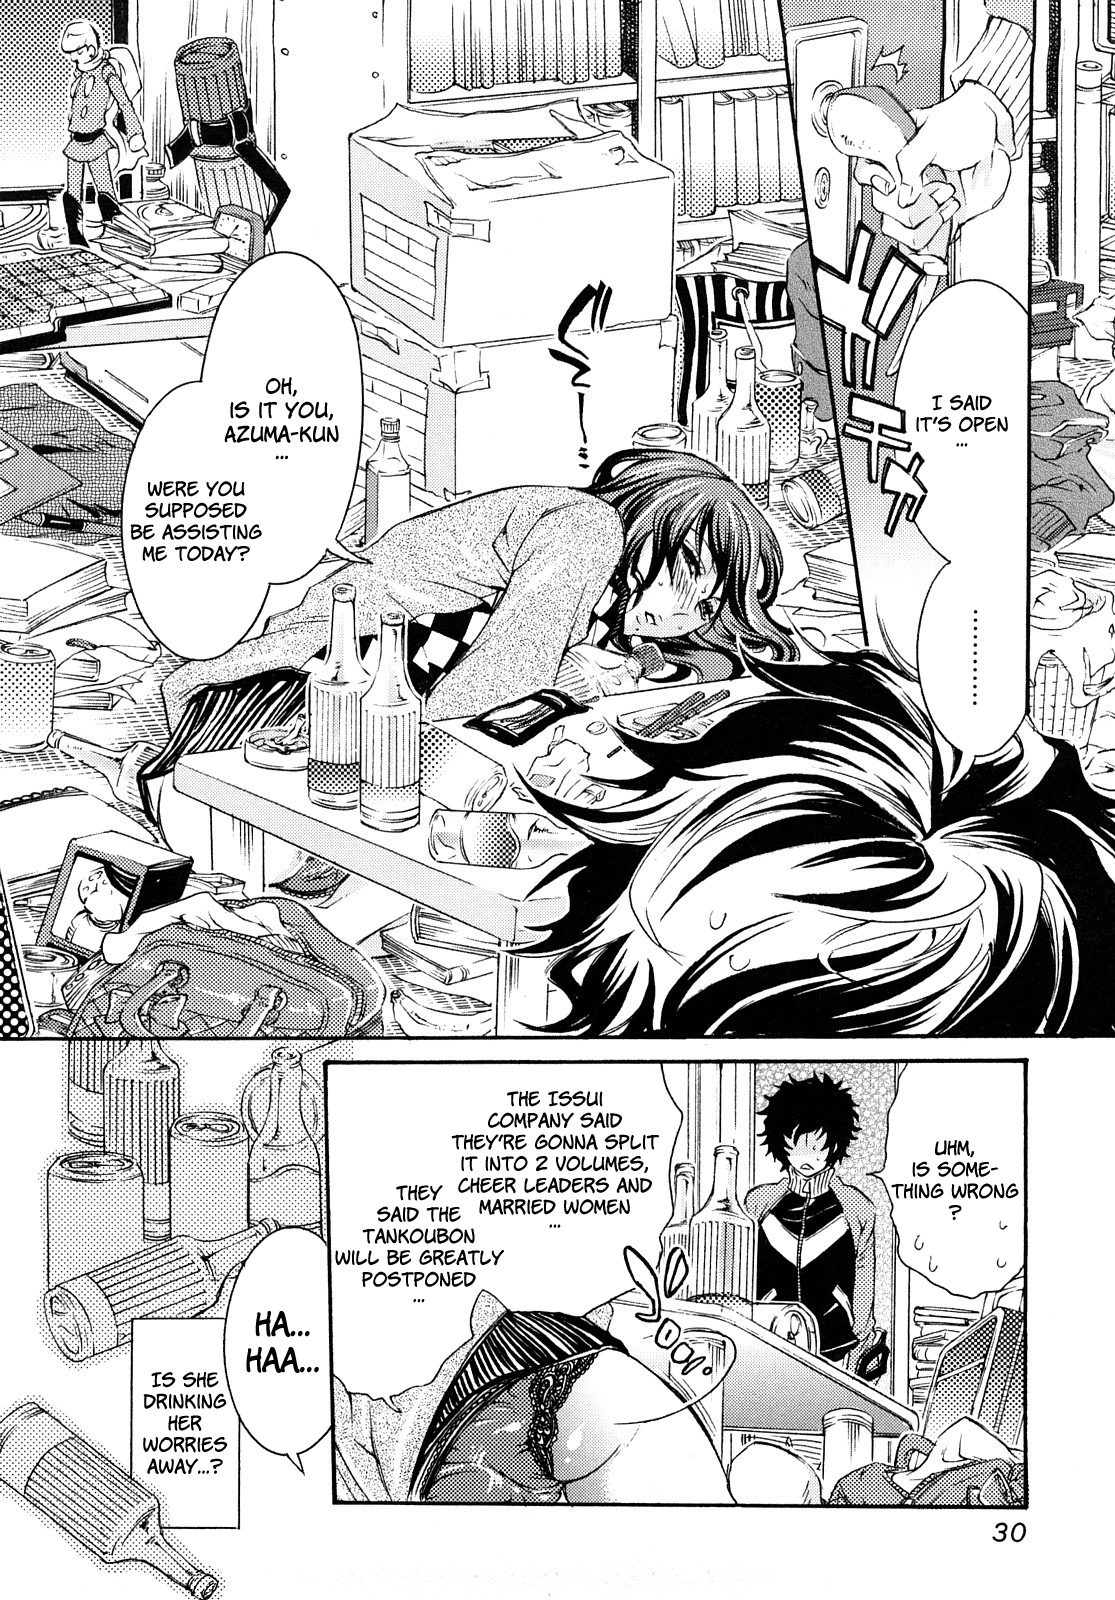 [Hattori Mitsuka] Ero Manga Girl (Chap 1-3, English) 